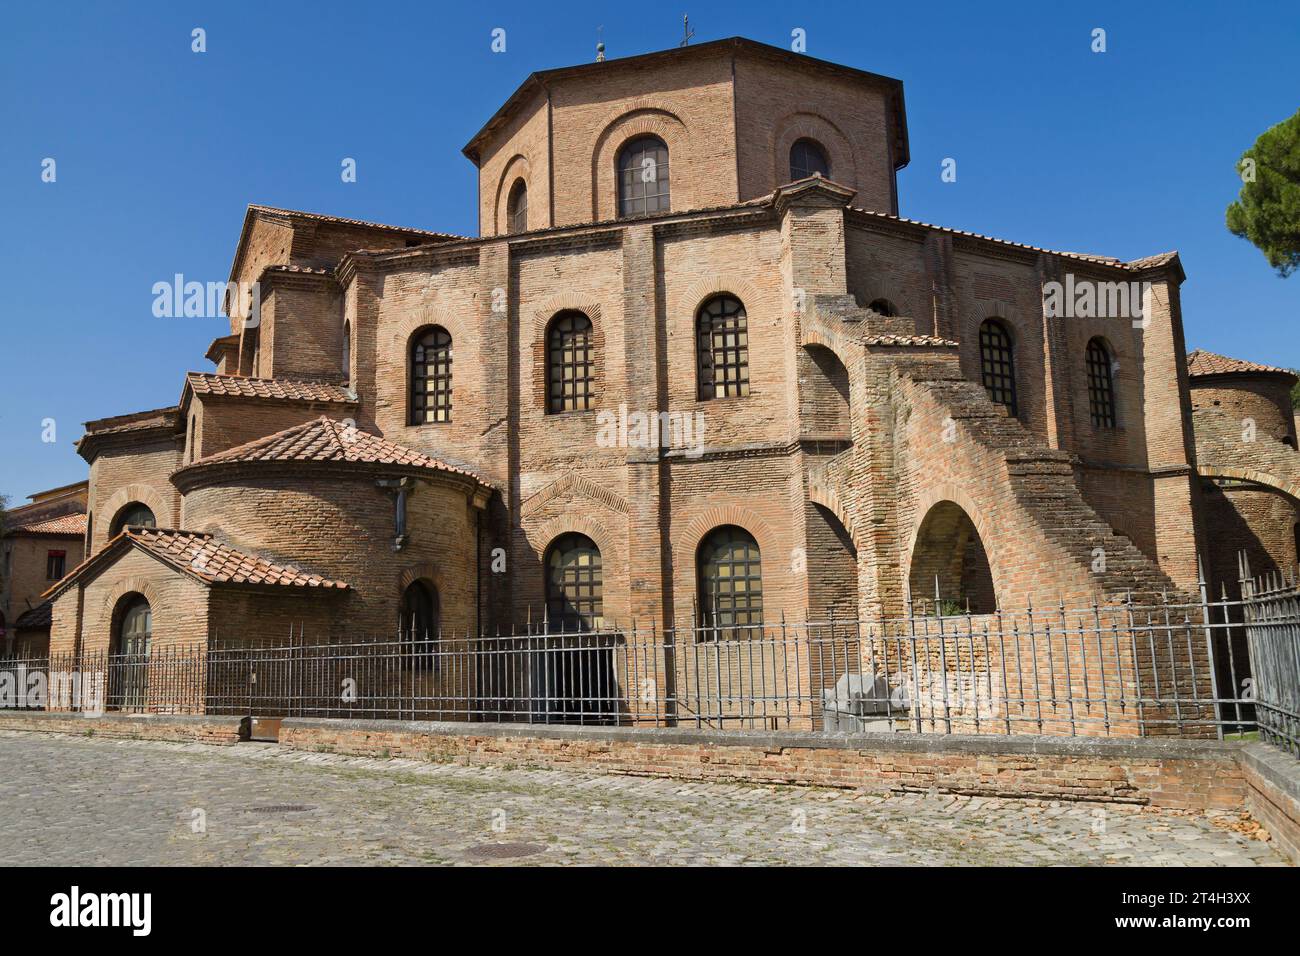 Vista esterna della Basilica di San vitale a Ravenna, Emilia-Romagna, Italia. Foto Stock